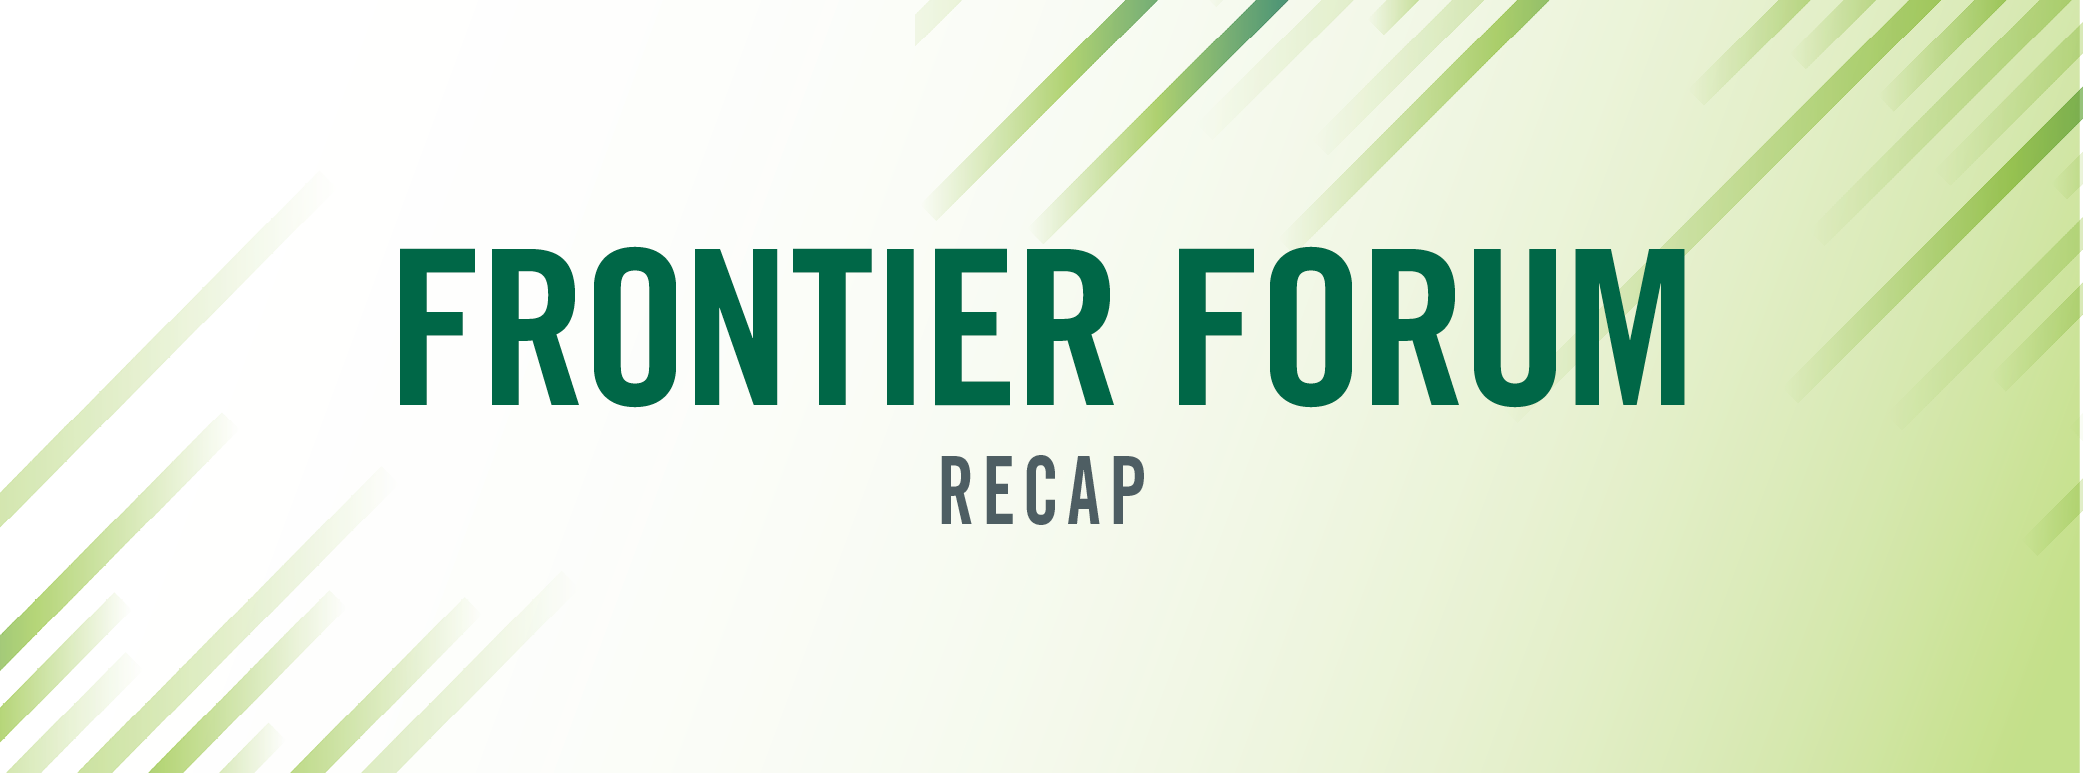 Frontier Forum recap header